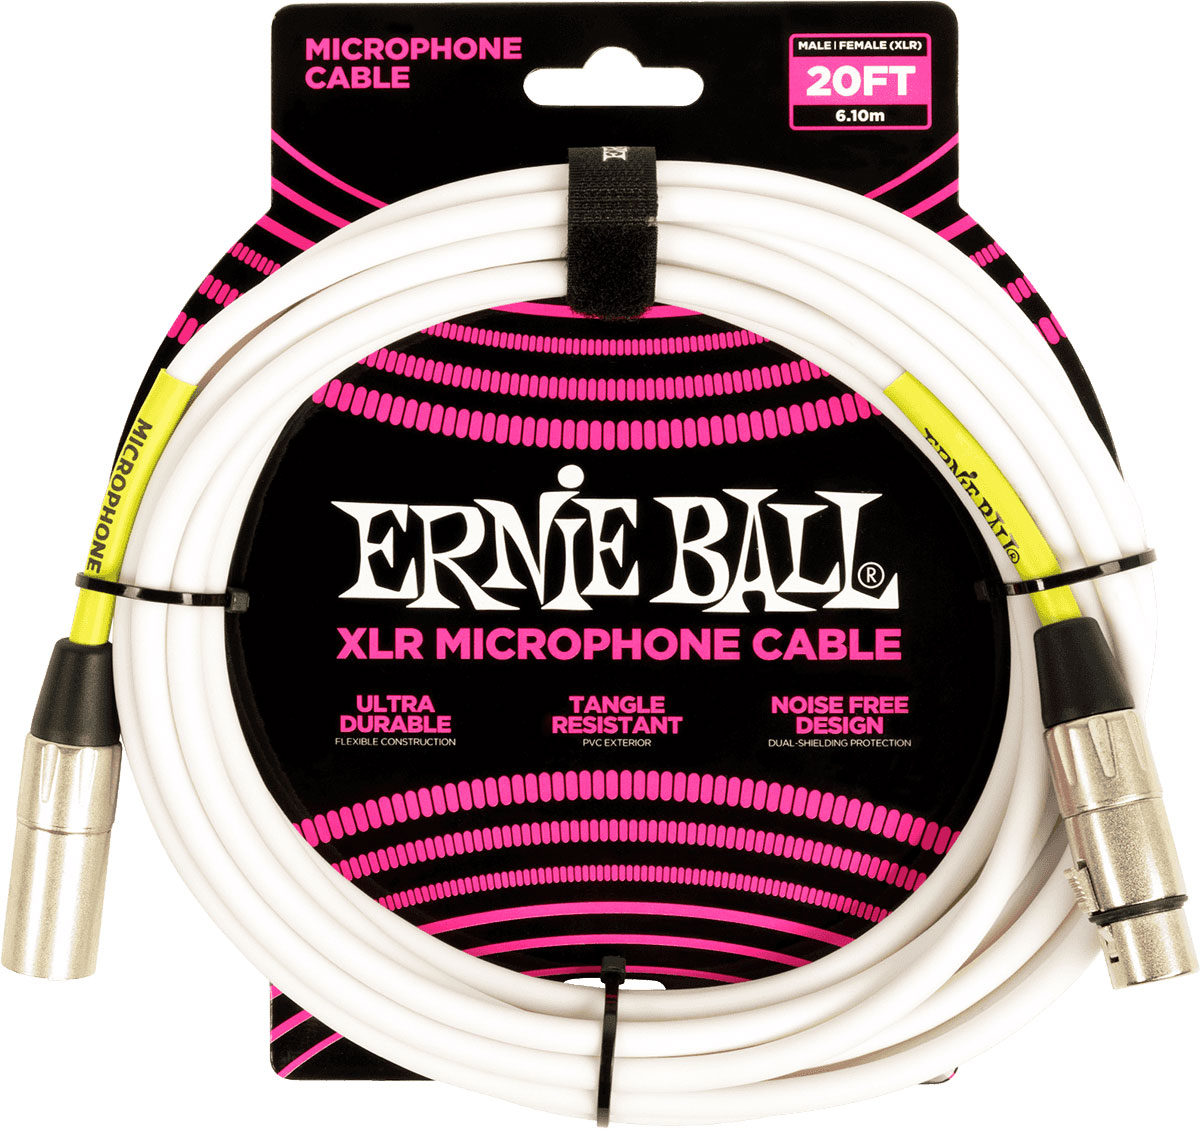 ERNIE BALL CBLES MICROPHONE CLASSIC XLR MLE/XLR FEM 6M BLANC